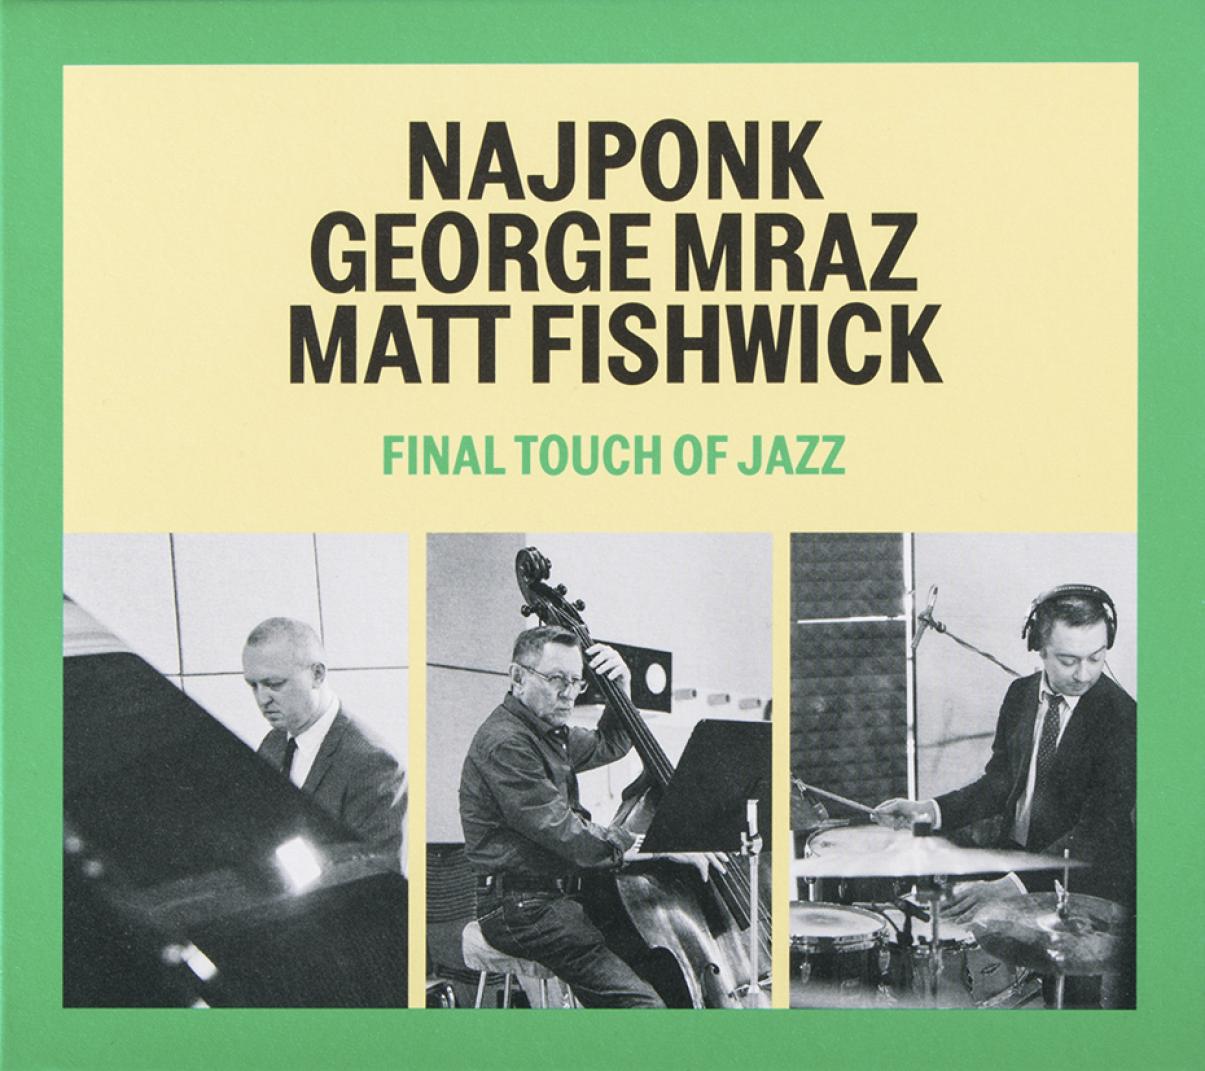 Najponk, Mraz, Fishwick: Final Touch of Jazz